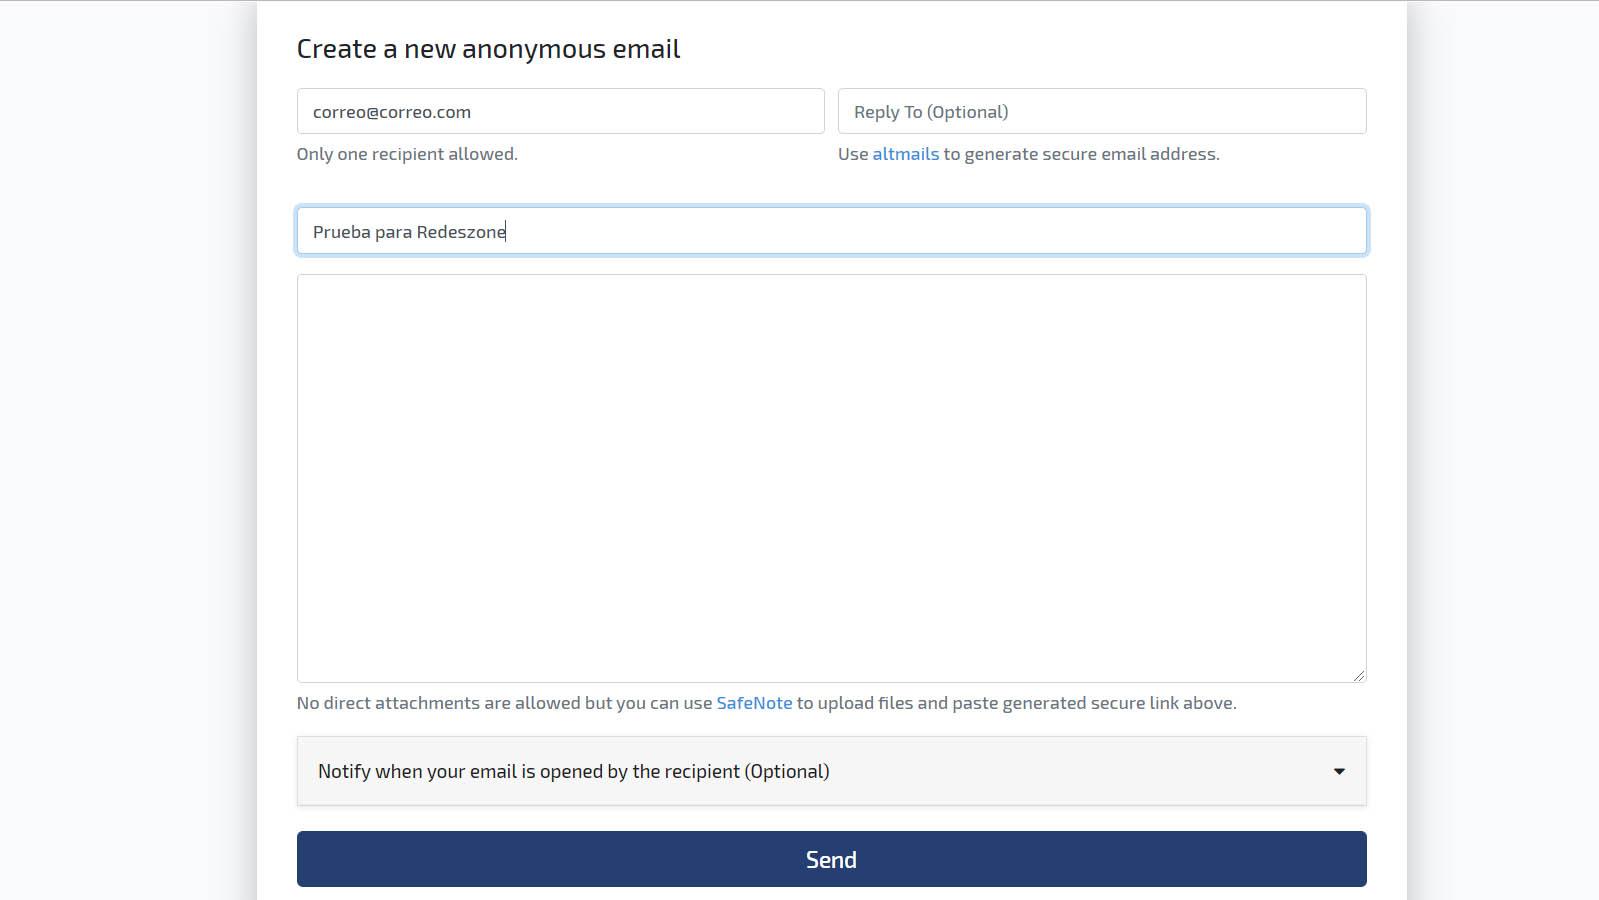 Enviar correos anónimos con SendMail